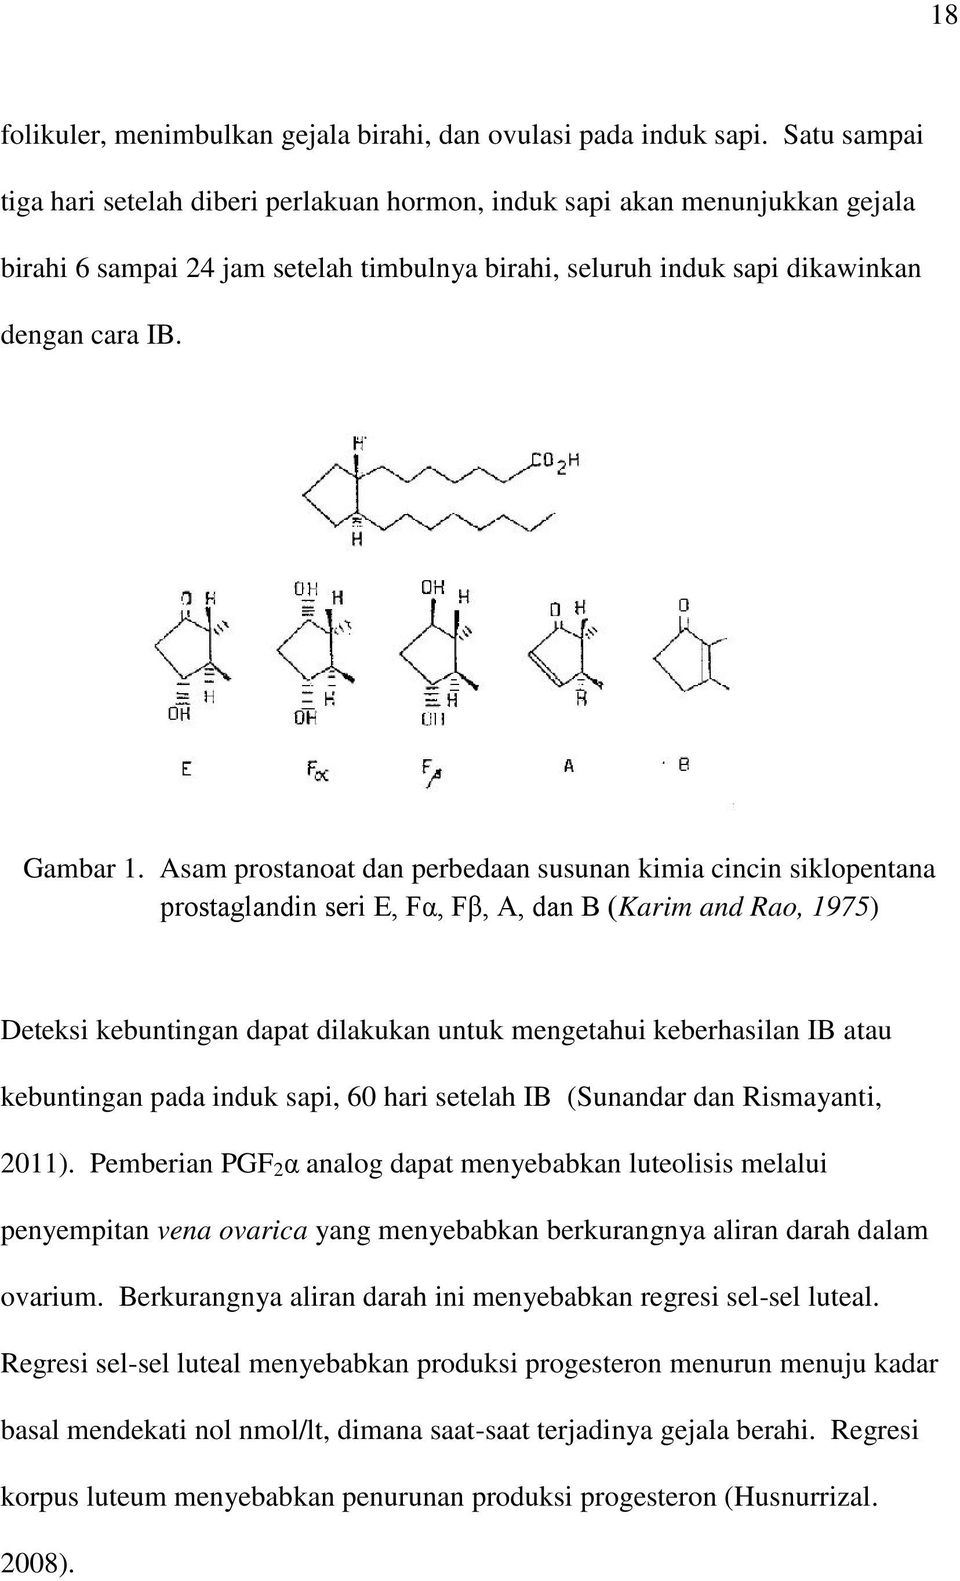 Asam prostanoat dan perbedaan susunan kimia cincin siklopentana prostaglandin seri E, Fα, Fβ, A, dan B (Karim and Rao, 1975) Deteksi kebuntingan dapat dilakukan untuk mengetahui keberhasilan IB atau